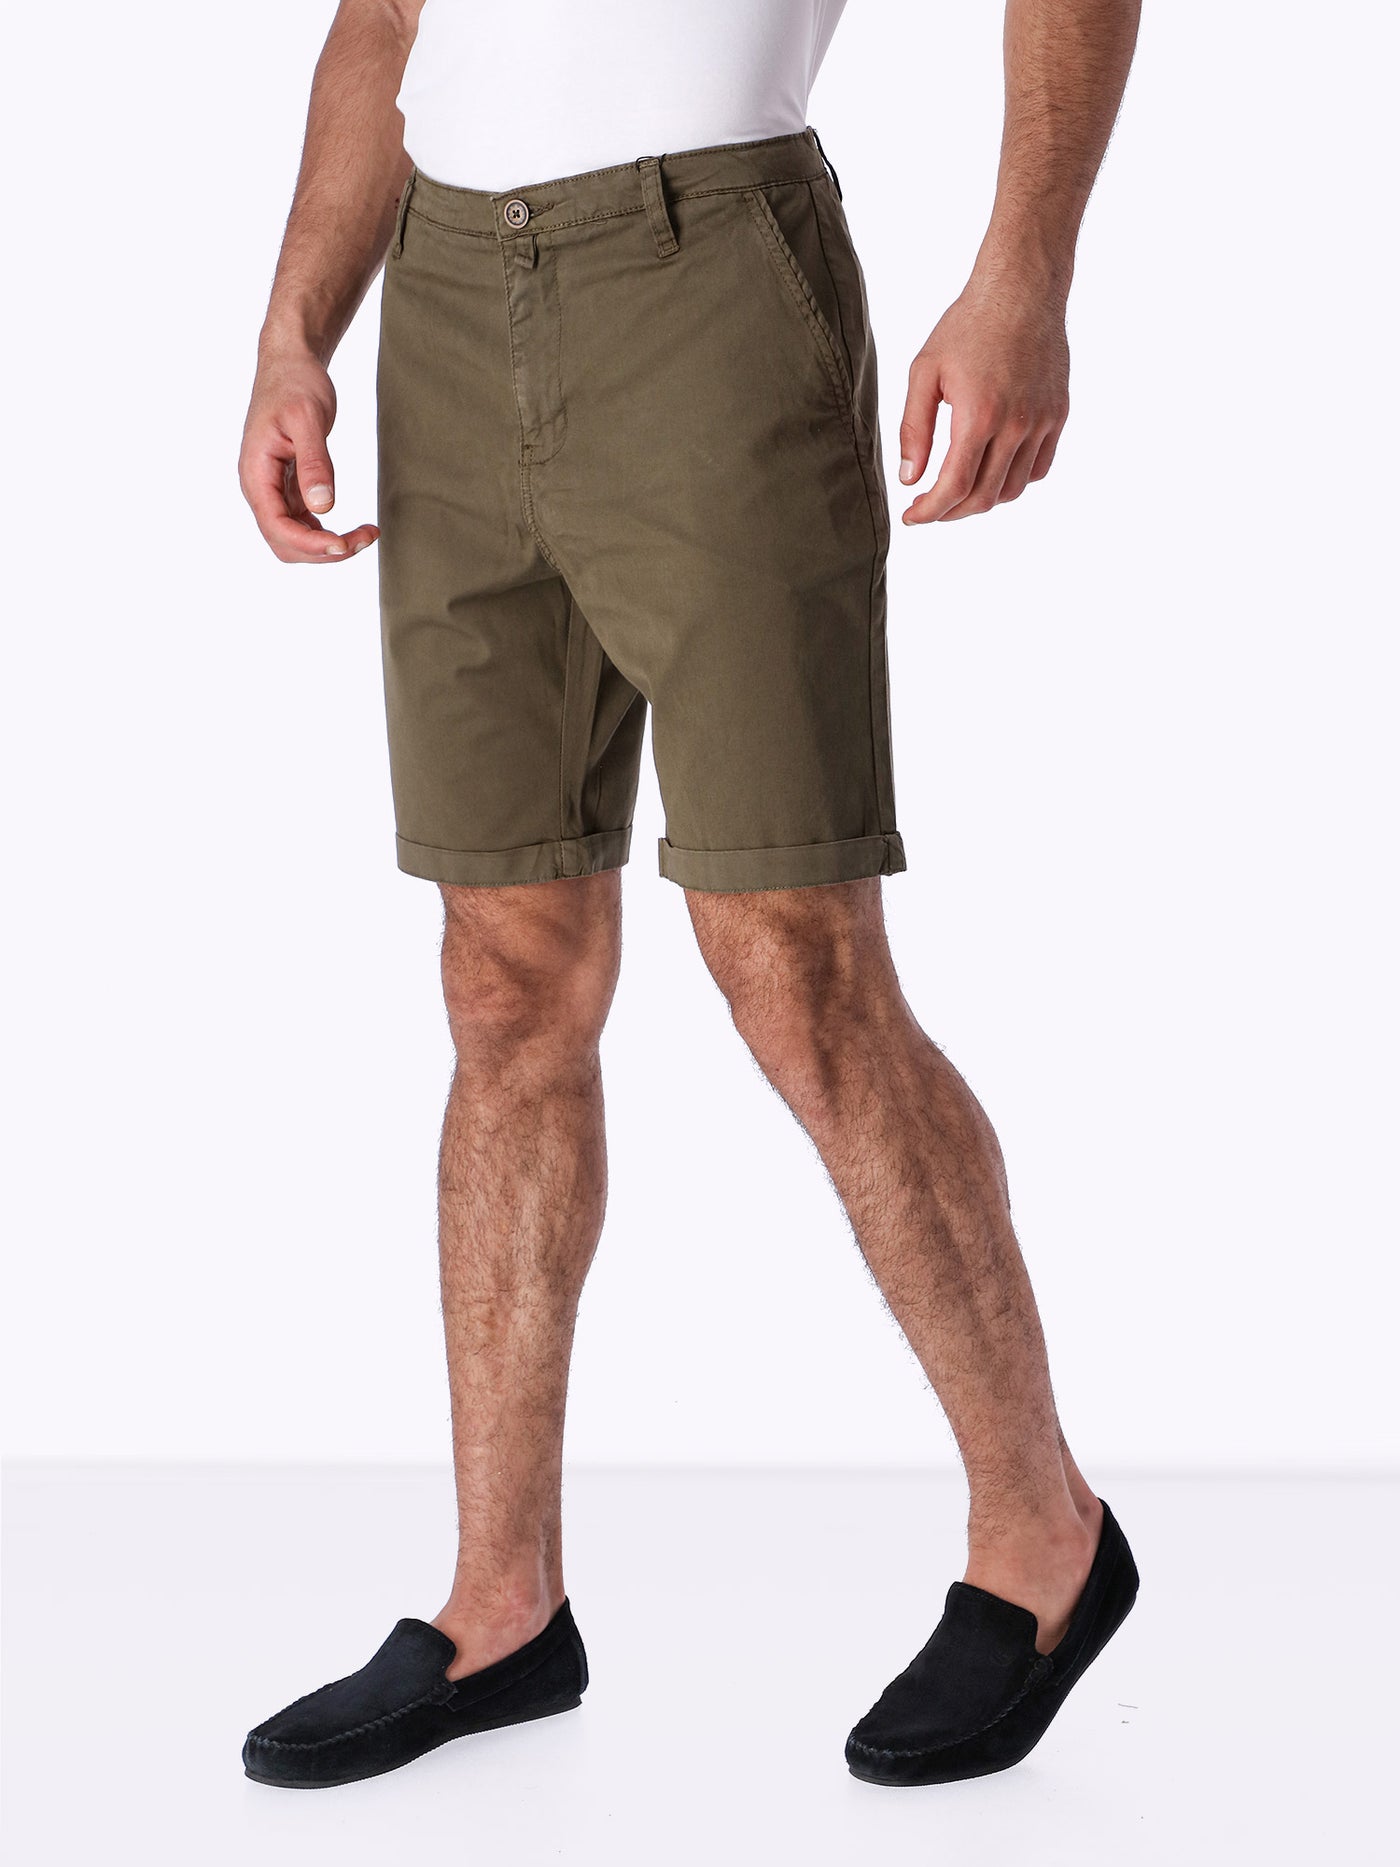 OR Men's Rolled Up Hem Shorts